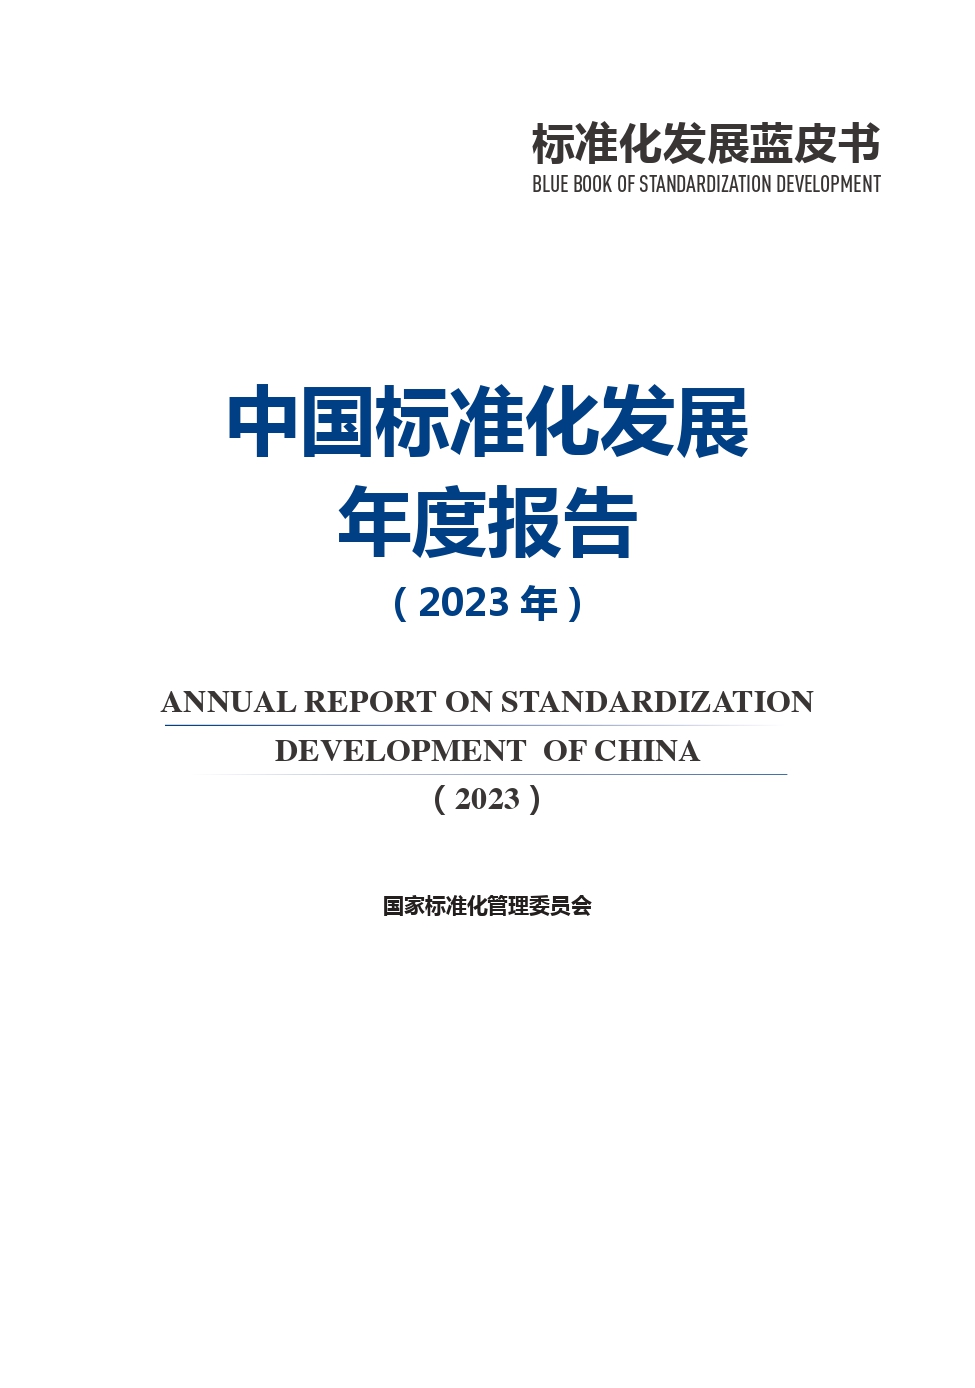 《中国标准化发展年度报告（2023年）》_page-0002.jpg